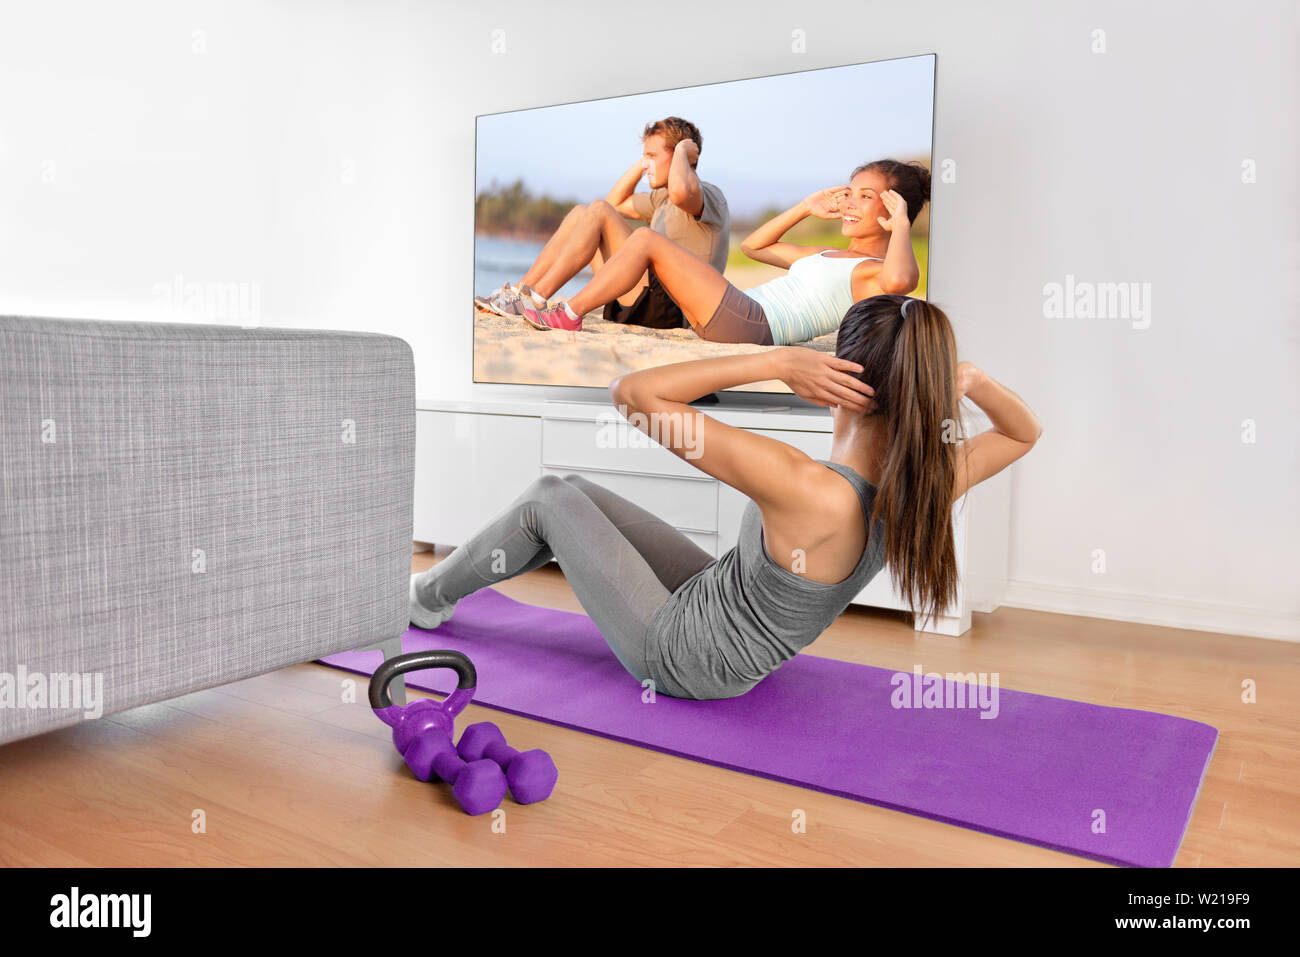 Home Training - Frau Ausübung vor einem Flachbildschirm mit einem fitnessprogramm oder Trainieren während einer TV-Show liegen auf einem Yoga Matte vor dem Sofa im Wohnzimmer eines Hauses oder einer Wohnung. Stockfoto